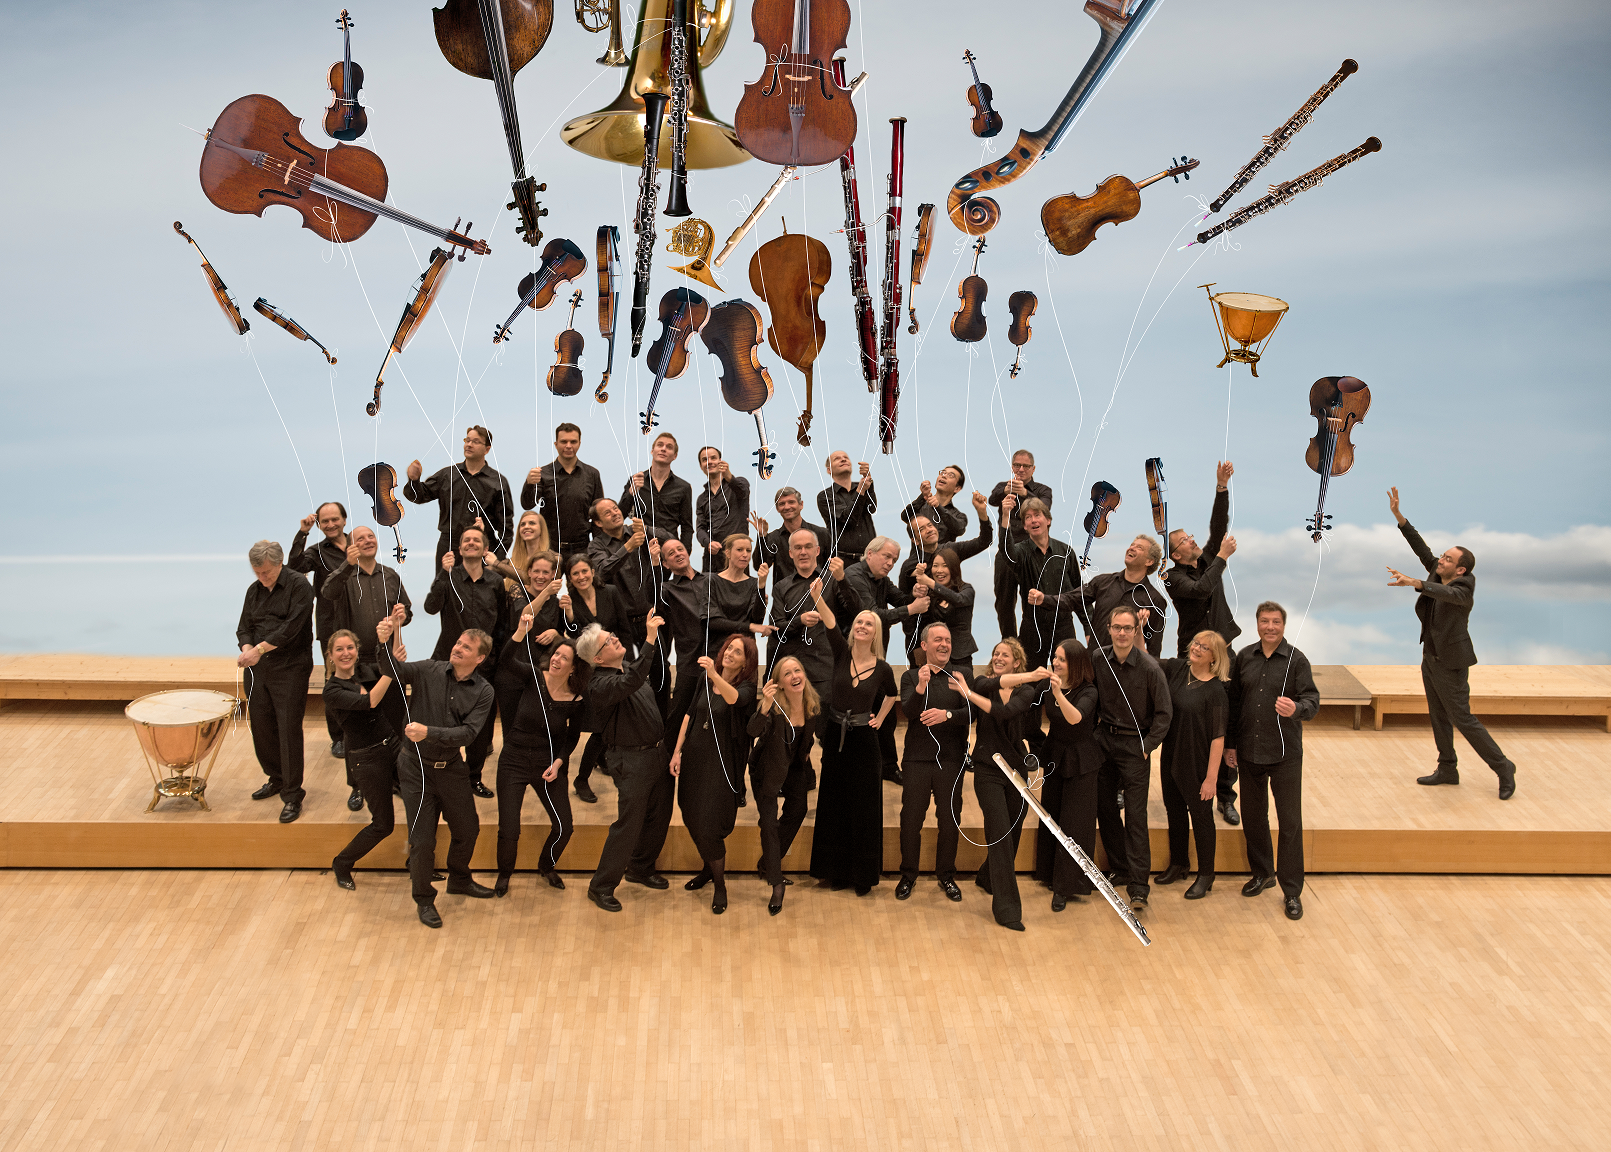 모차르트 작품 연주로 세계적인 명성을 얻은 모차르테움 오케스트라가 오는 9일부터 아담 피셔의 지휘로 모차르트 음악의 진수를 선보인다. I.A.M 제공